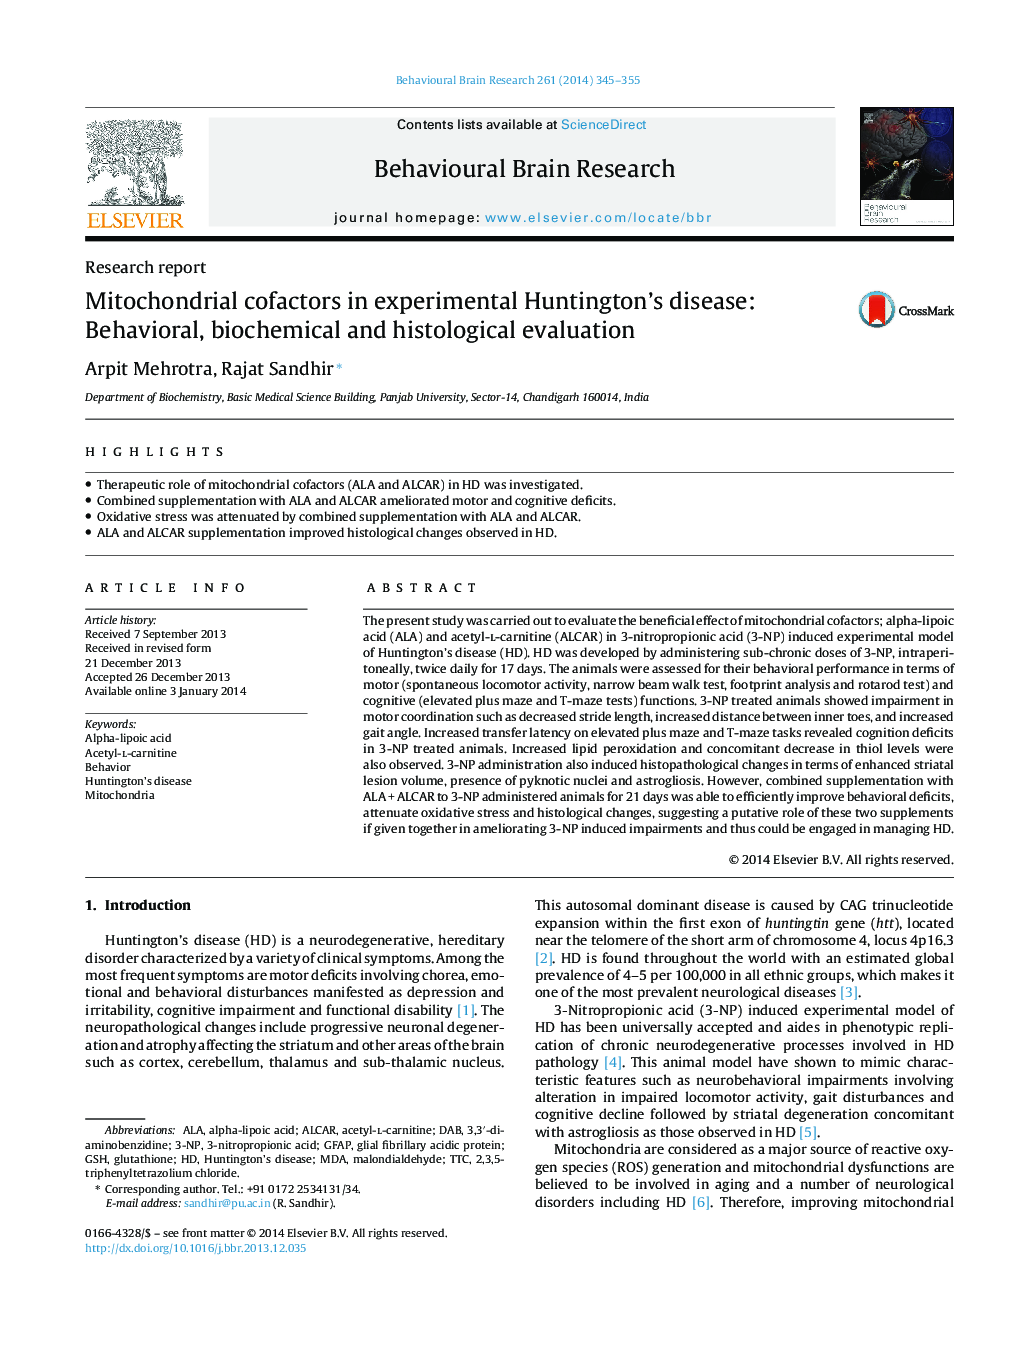 گزارش تحقیقاتی کوفاکتورهای متیوچندری در بیماری هانتینگتون تجربی: ارزیابی رفتاری، بیوشیمیایی و بافتشناسی 